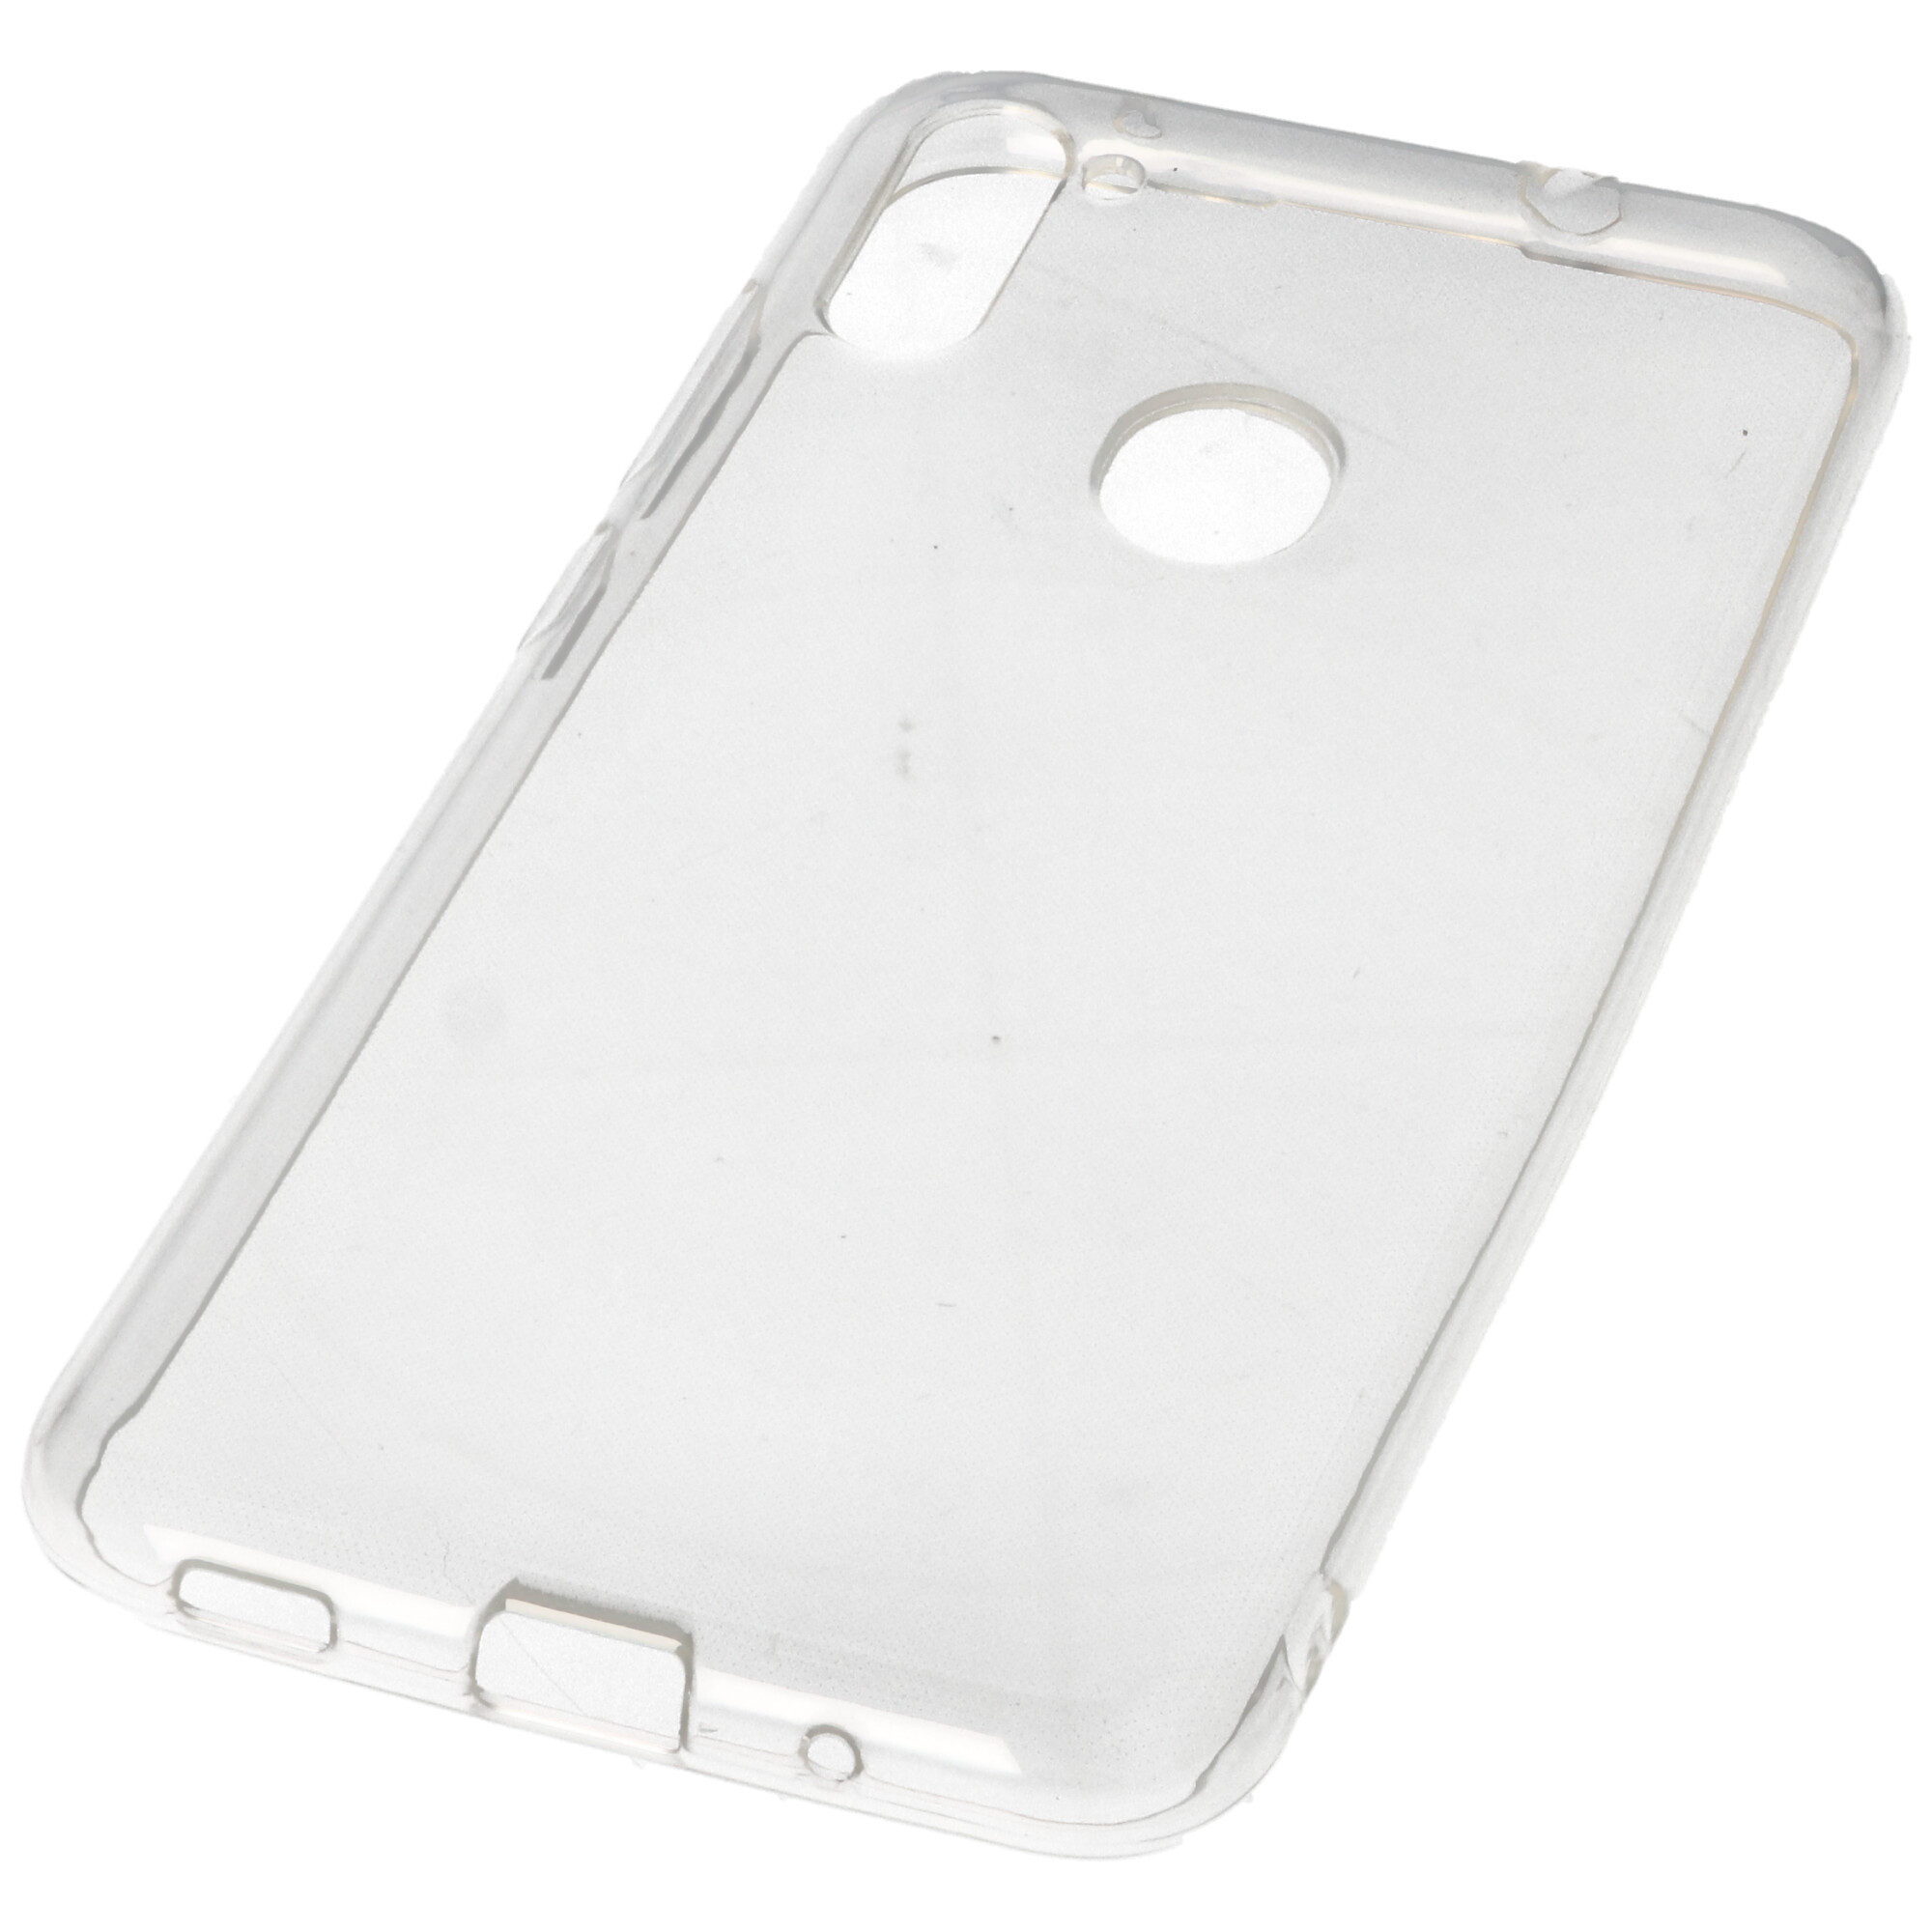 Hülle passend für Samsung Galaxy A11 - transparente Schutzhülle, Anti-Gelb Luftkissen Fallschutz Silikon Handyhülle robustes TPU Case